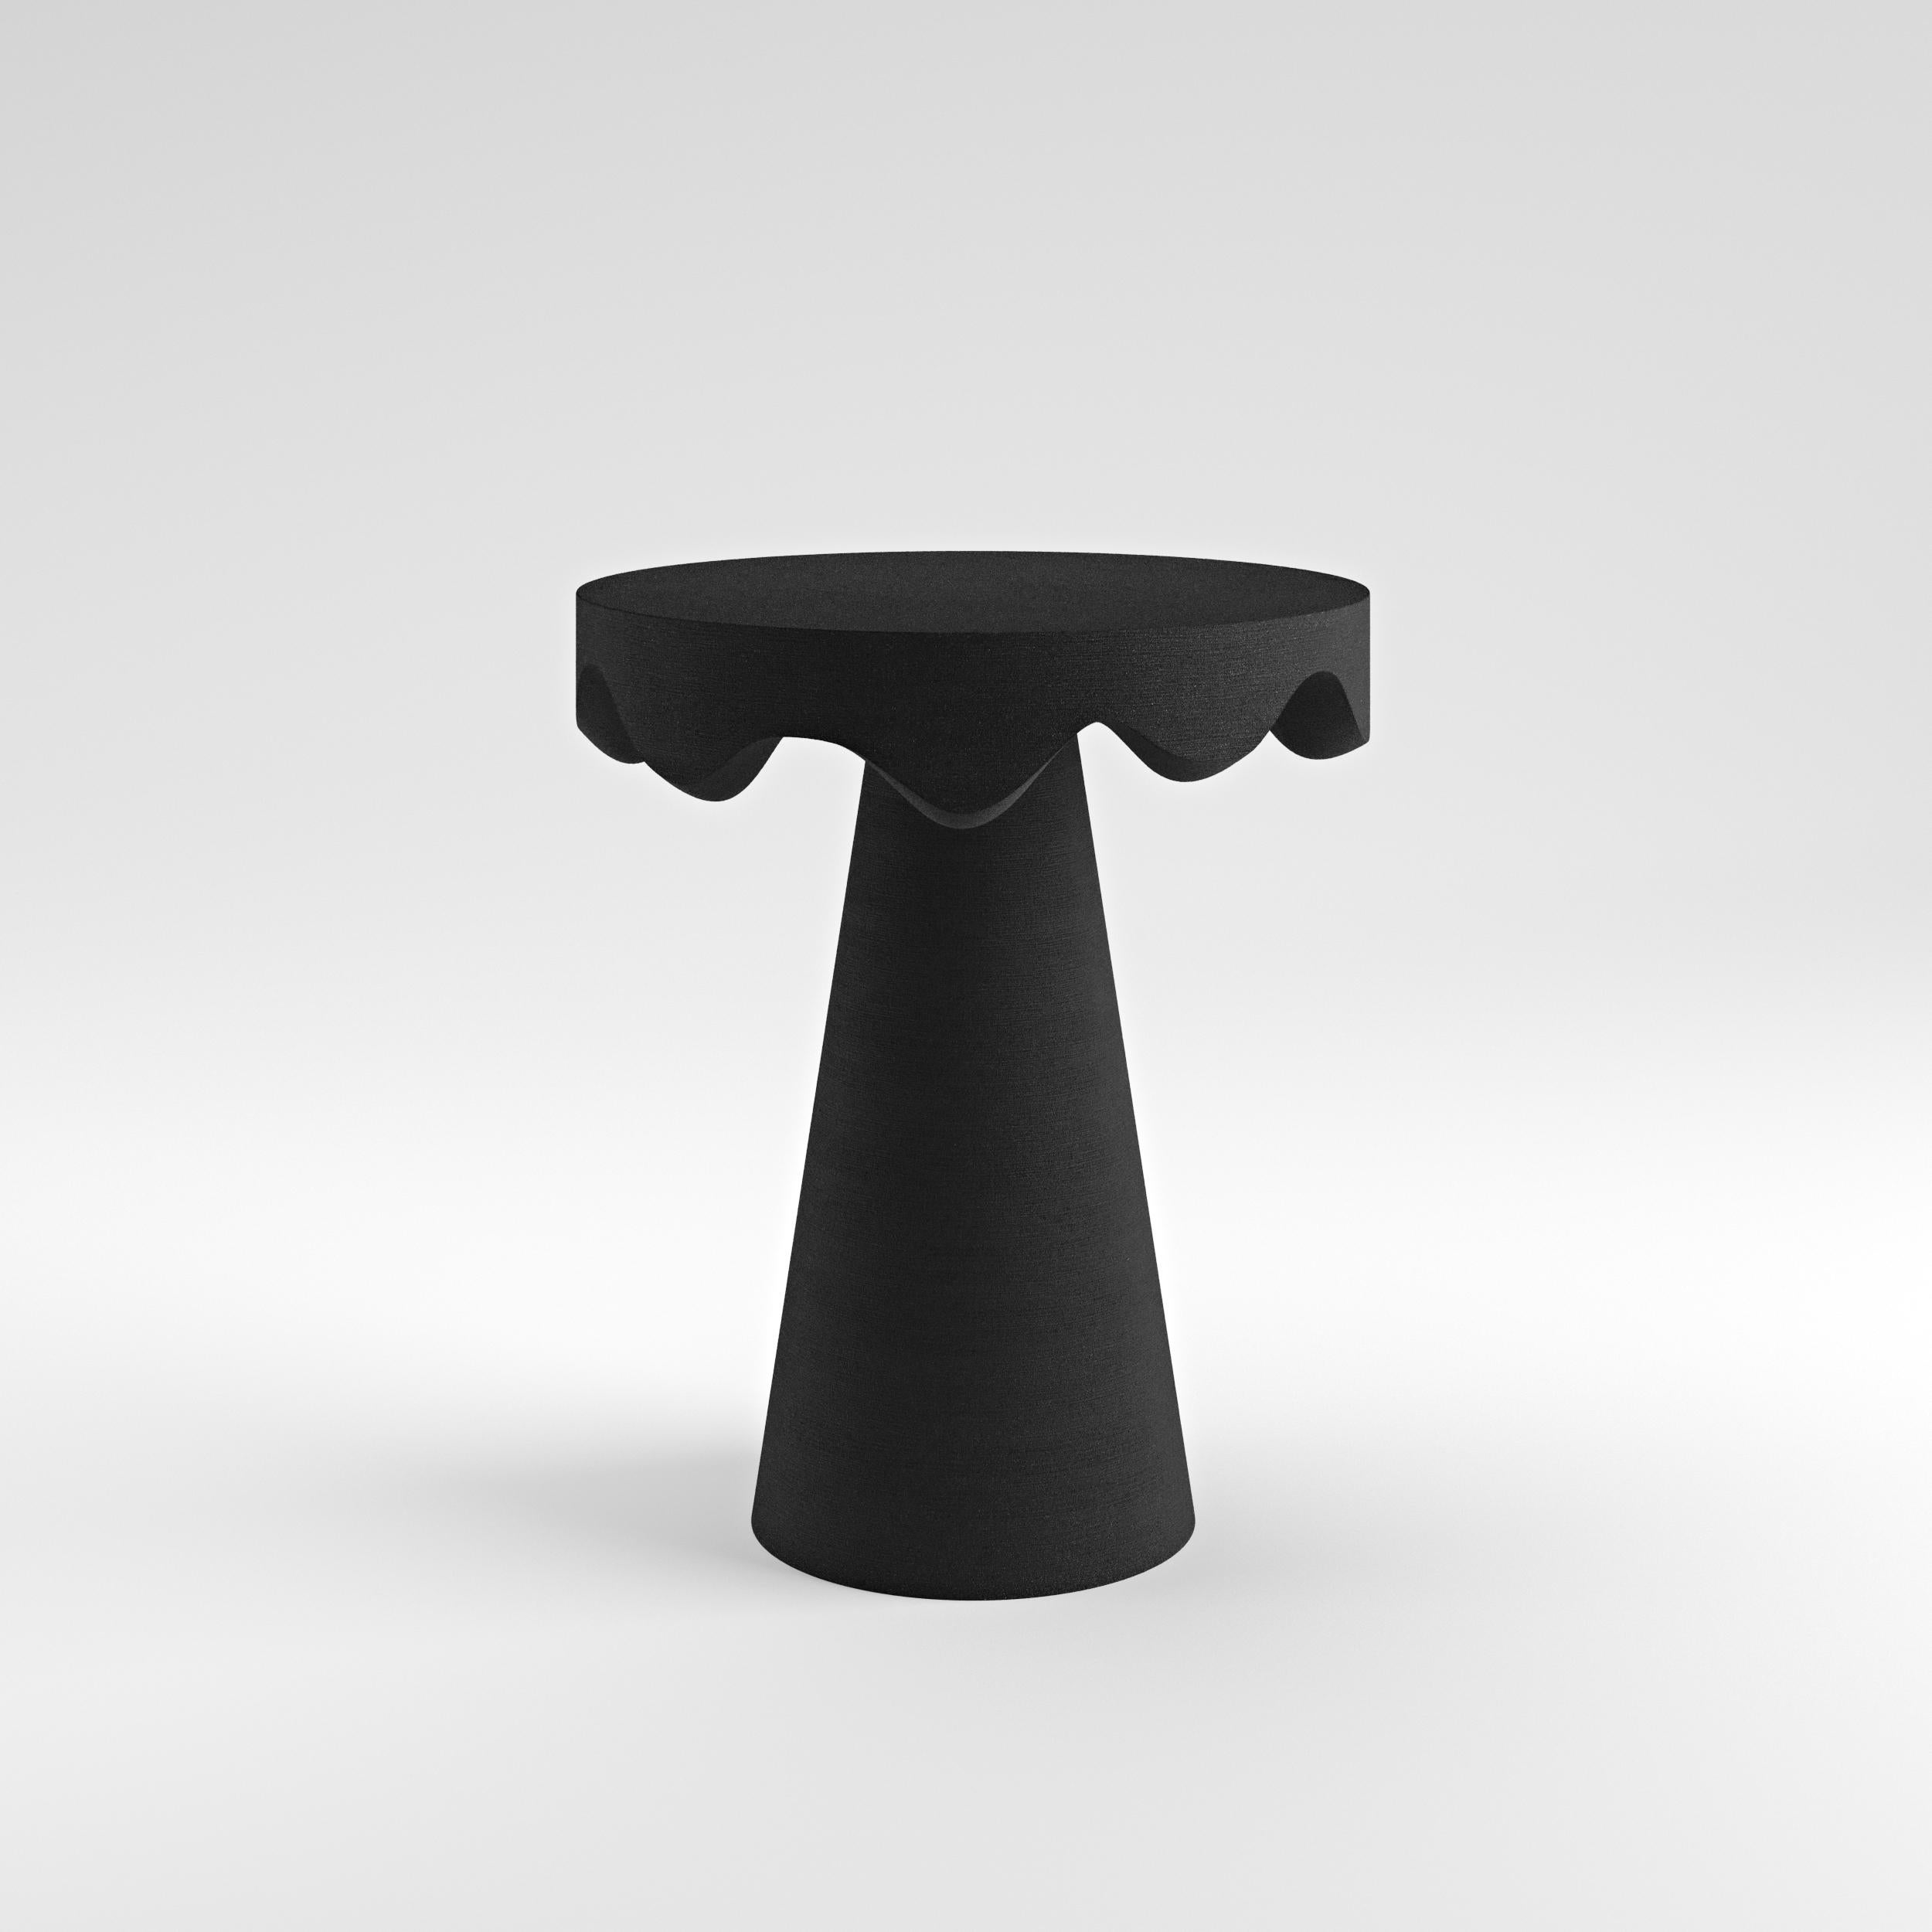 Sur commande
Sable quartzeux Dripotlé
Table d'appoint par AT&T

L'exquise table d'appoint, créée à l'aide d'une technologie d'impression 3D innovante avec du sable de quartz, témoigne de l'esthétique immaculée du designer. Son aspect captivant et